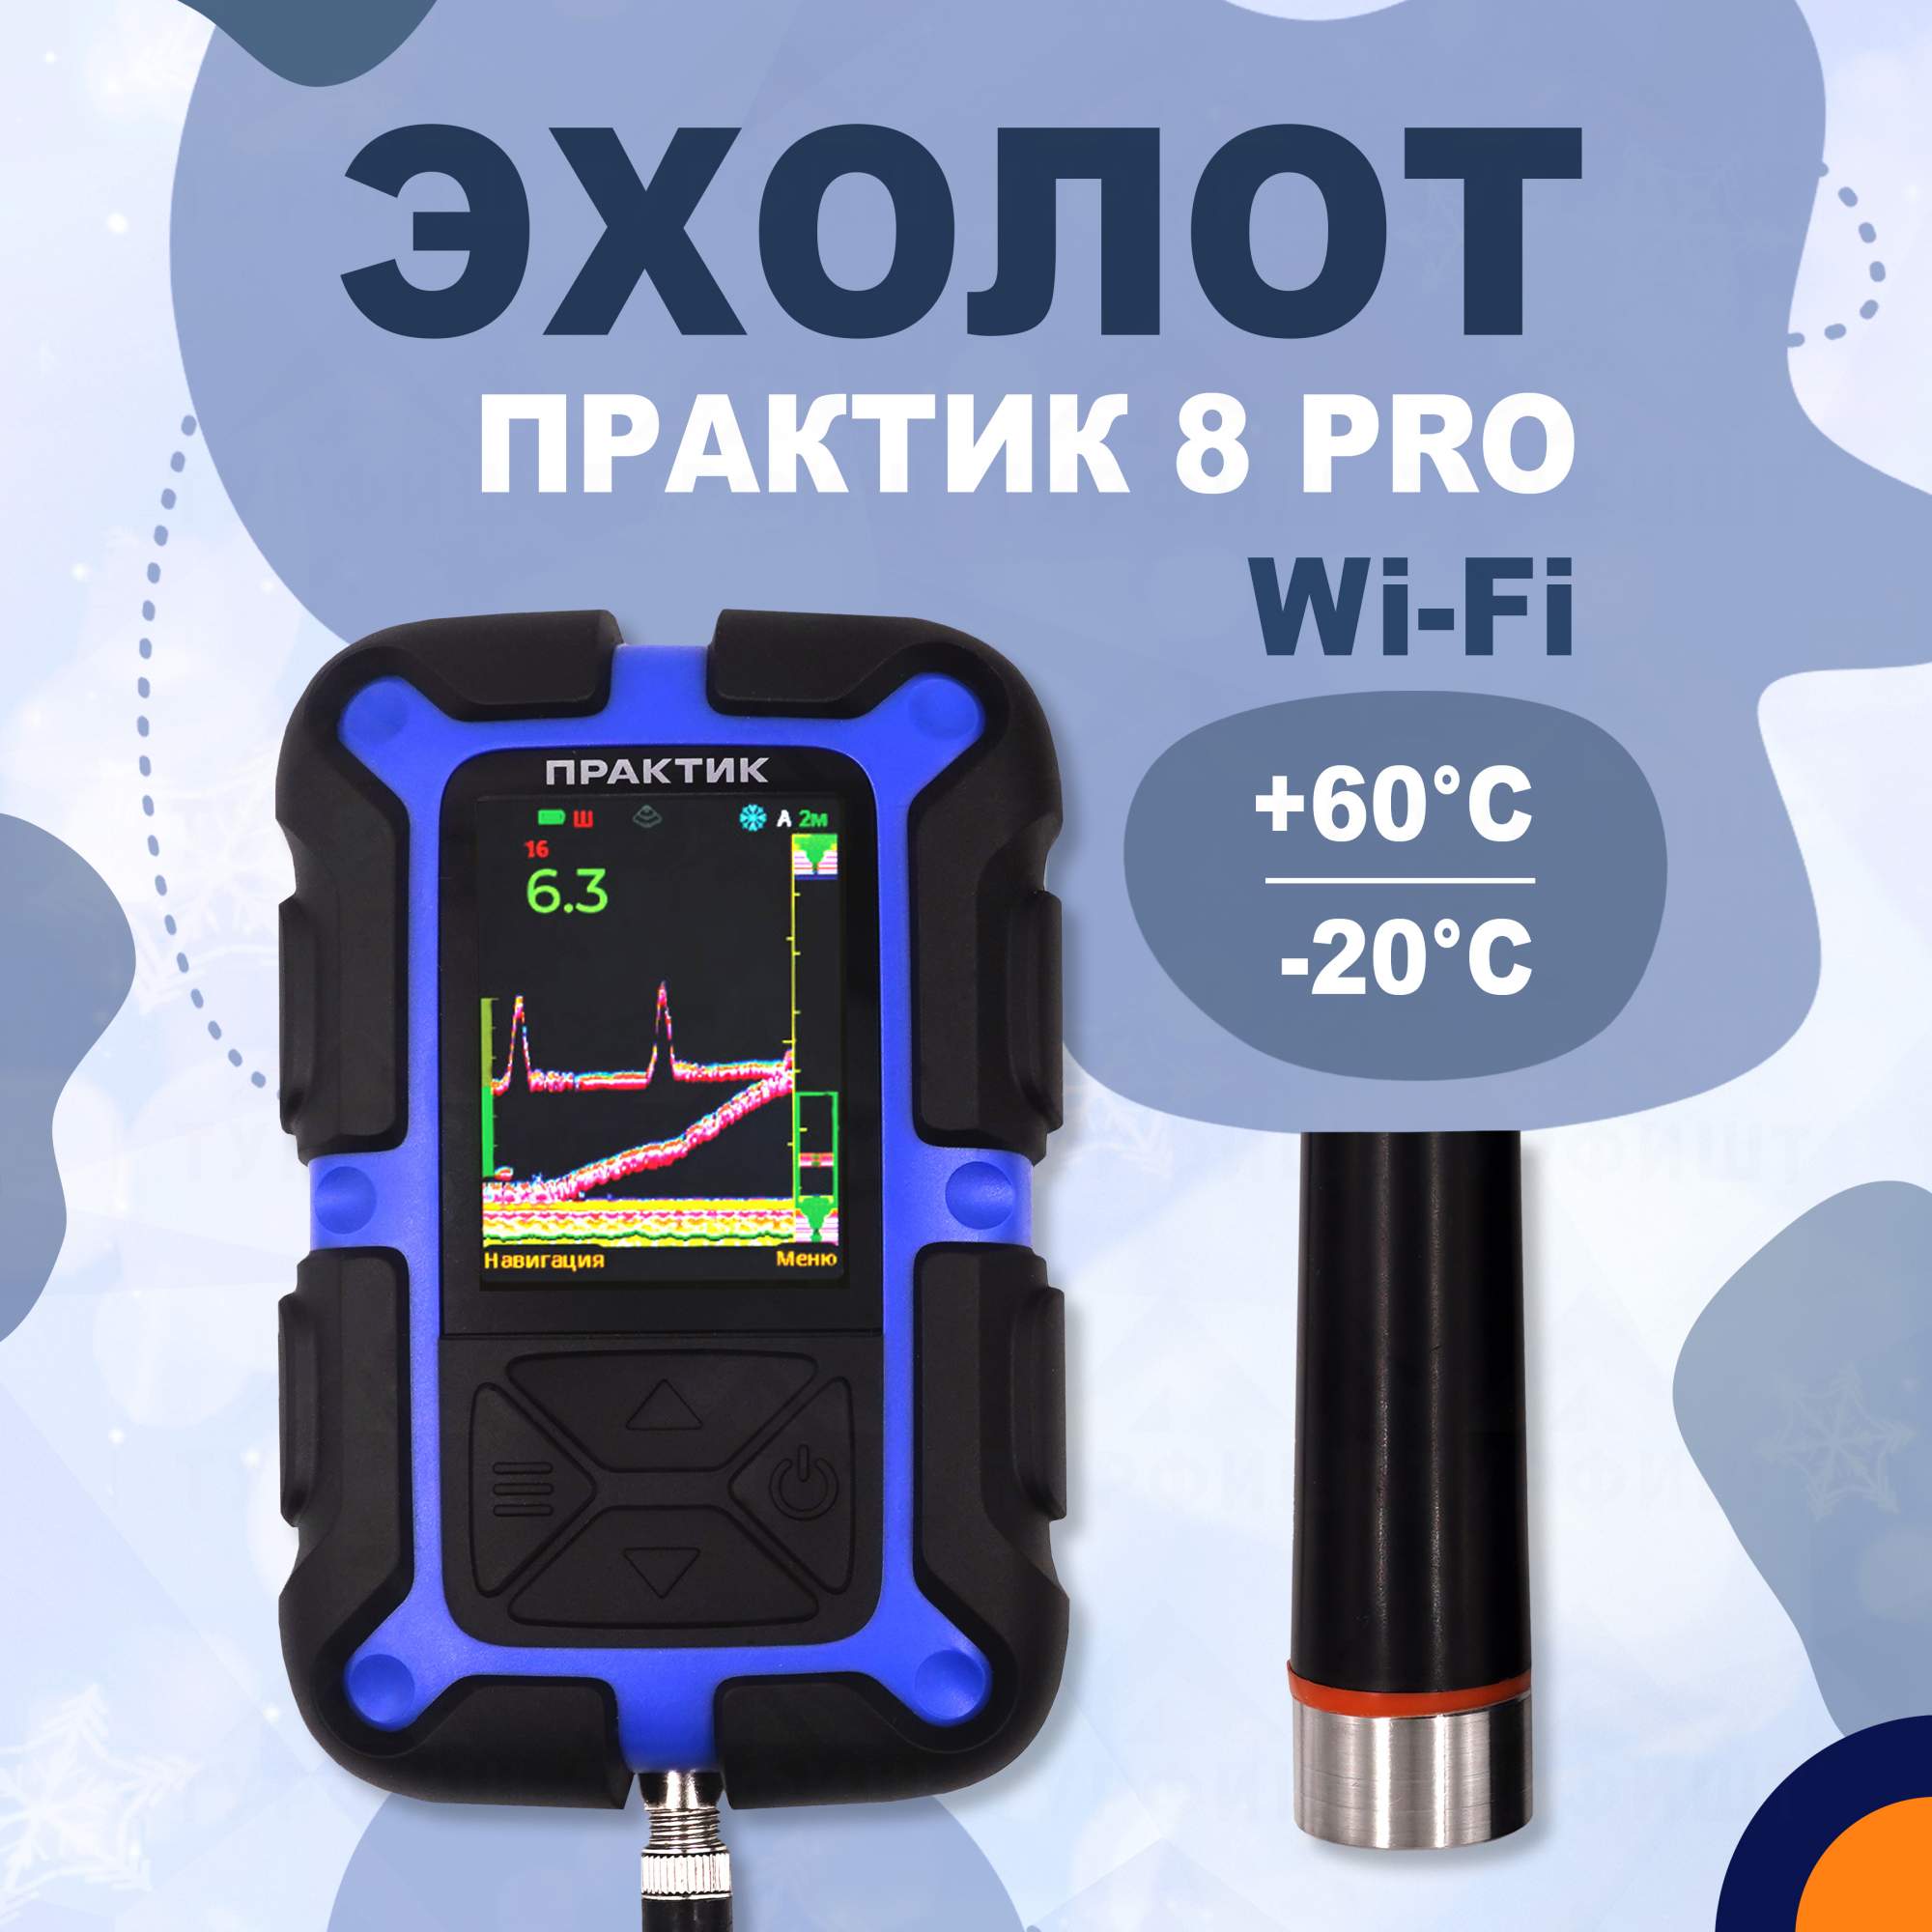 Эхолот Практик 8 PRO Wi-Fi для рыбалки - купить в Москве, цены на Мегамаркет | 600018298788